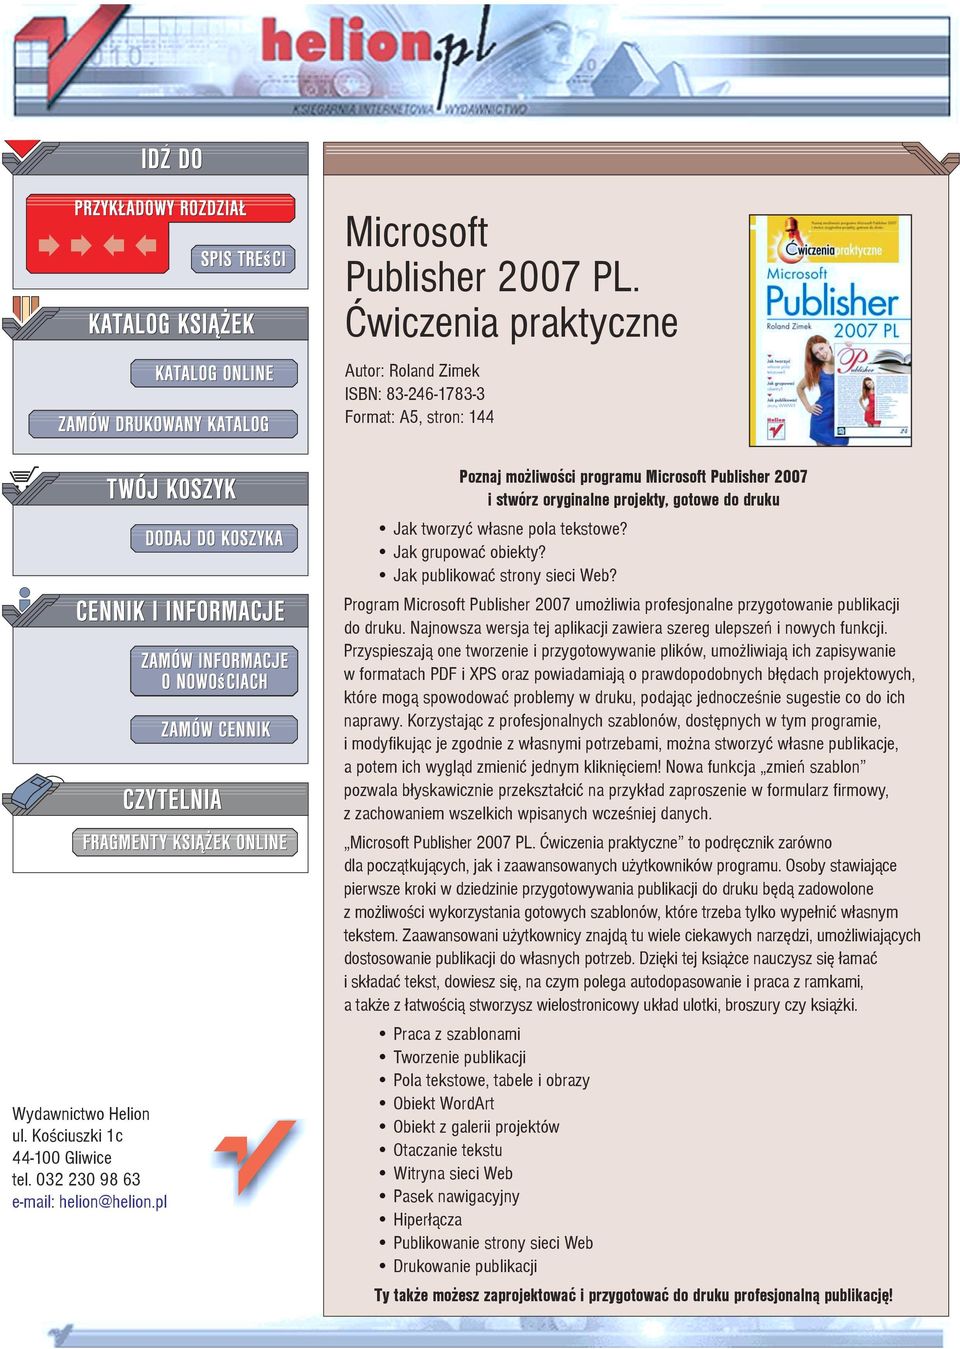 Jak publikowaæ strony sieci Web? Program Microsoft Publisher 2007 umo liwia profesjonalne przygotowanie publikacji do druku. Najnowsza wersja tej aplikacji zawiera szereg ulepszeñ i nowych funkcji.